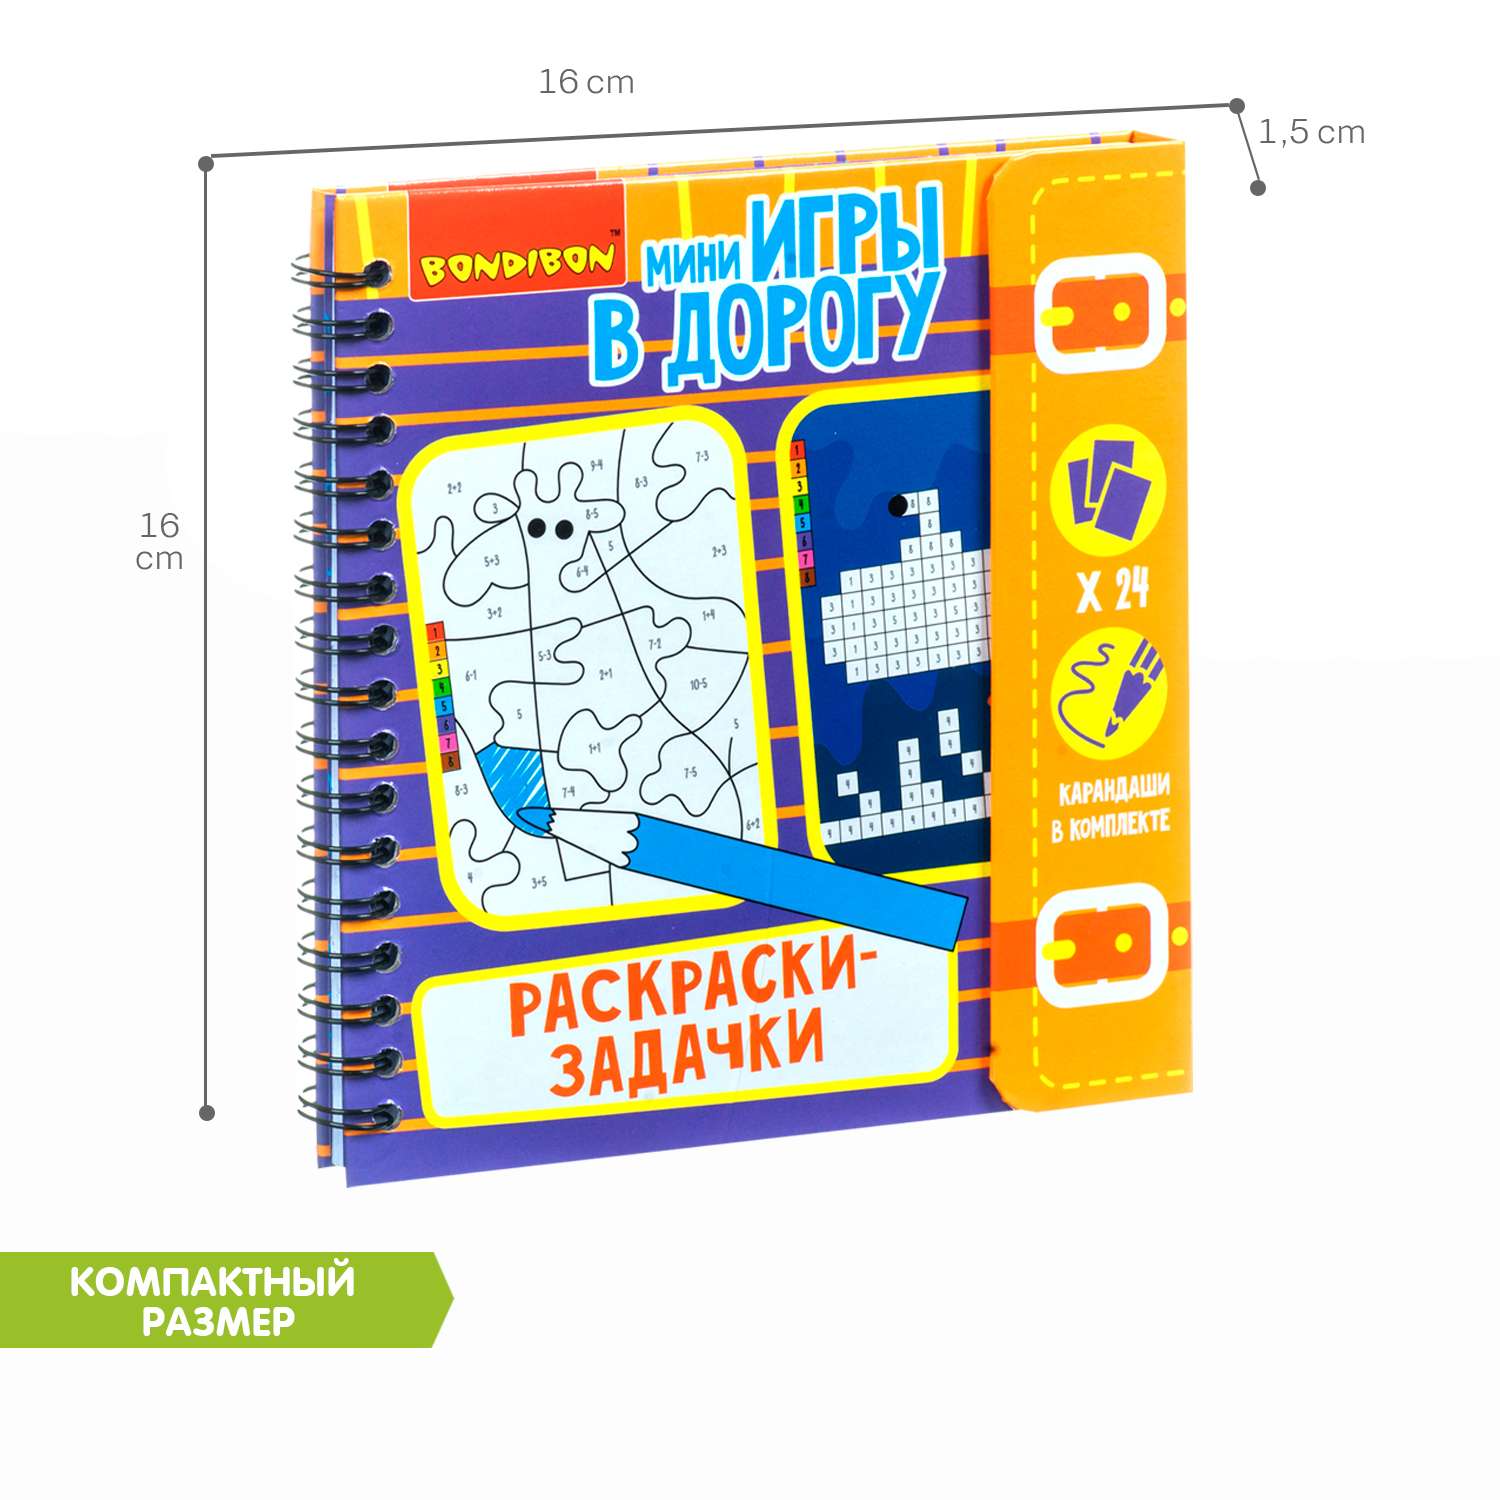 Компактная развивающая игра BONDIBON мини в дорогу Раскраски задачки с карандашами - фото 6